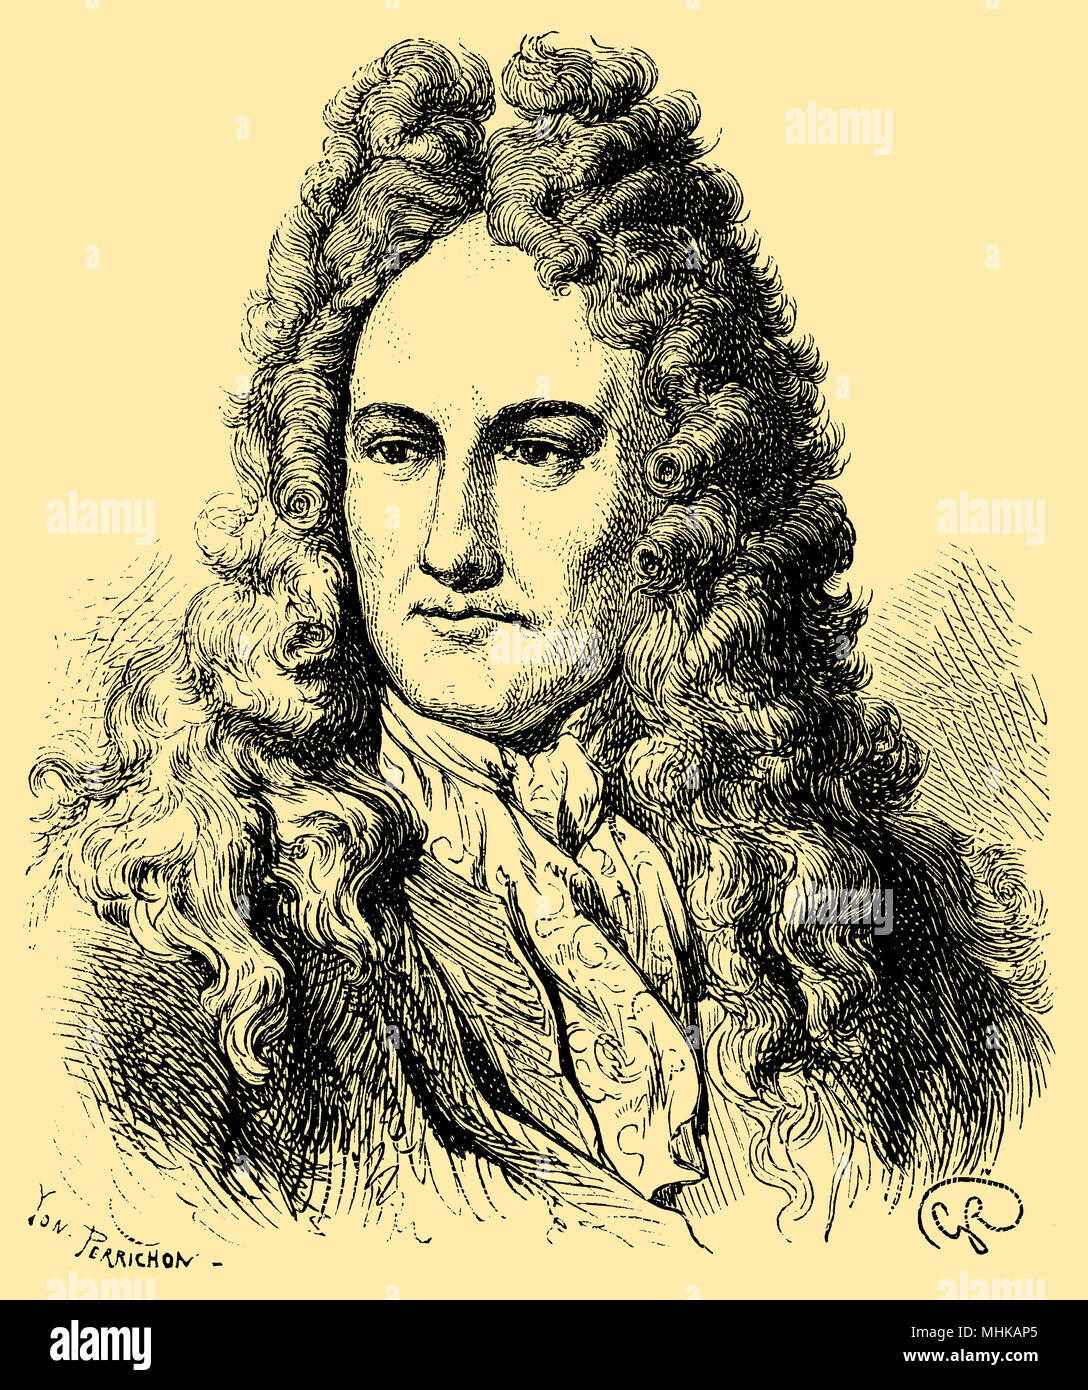 Gottfried Wilhelm Freiherr von Leibniz (born July 6, 1646, died November 14, 1716), Stock Photo